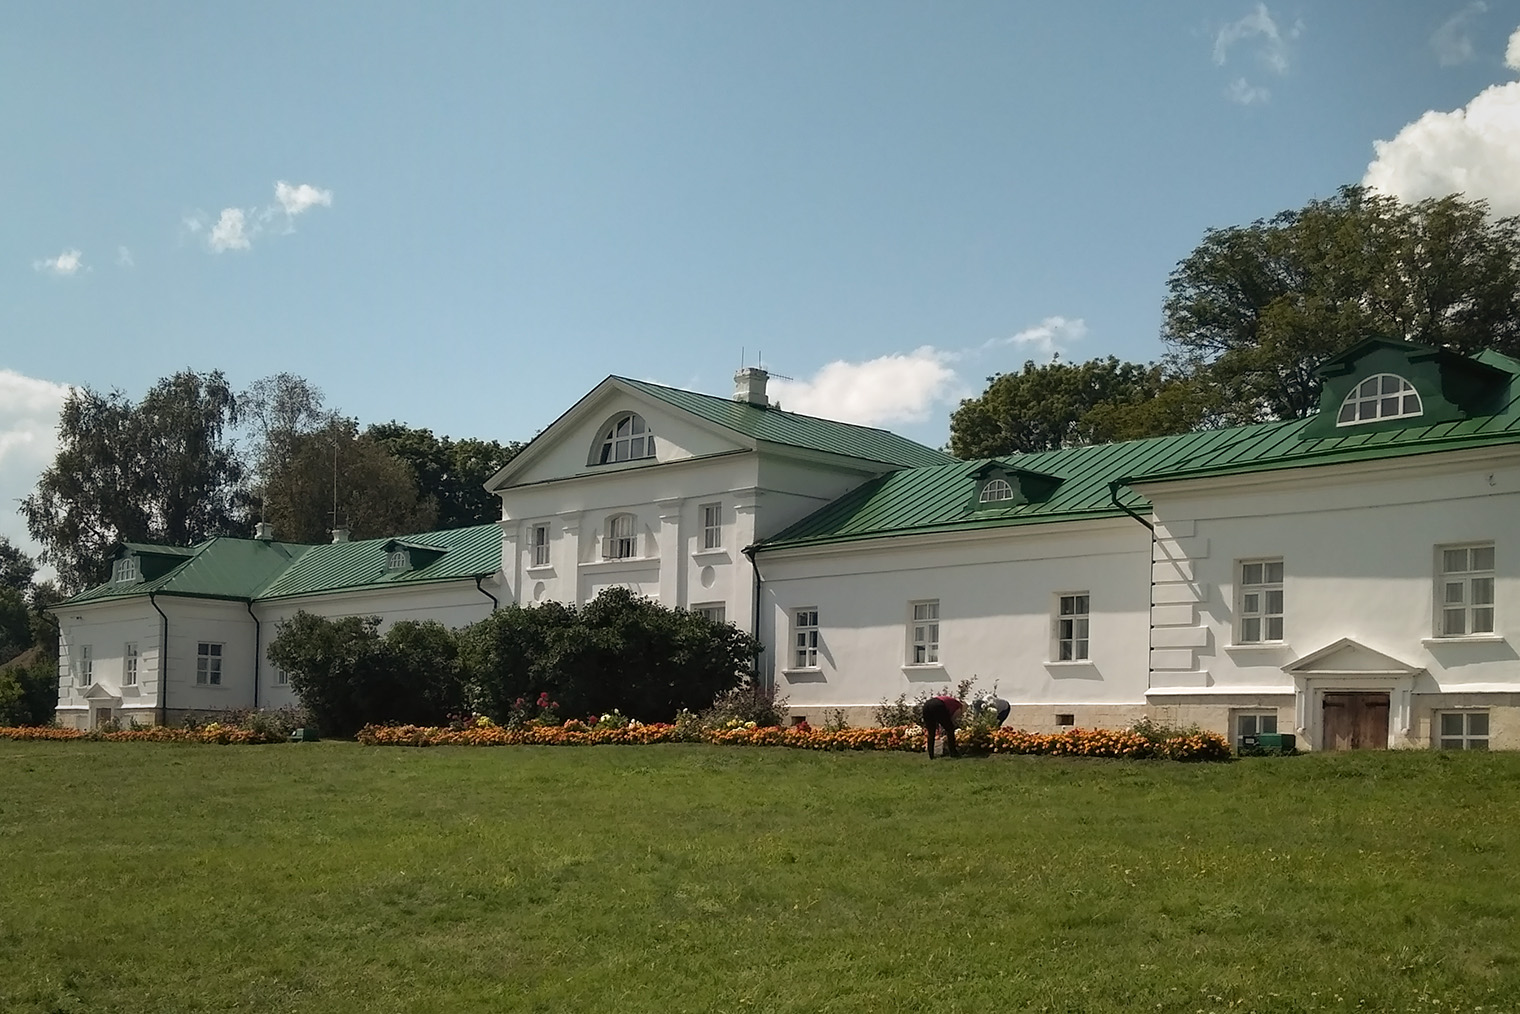 Дом Волконского, деда Льва Толстого, — самое старое каменное здание в усадьбе